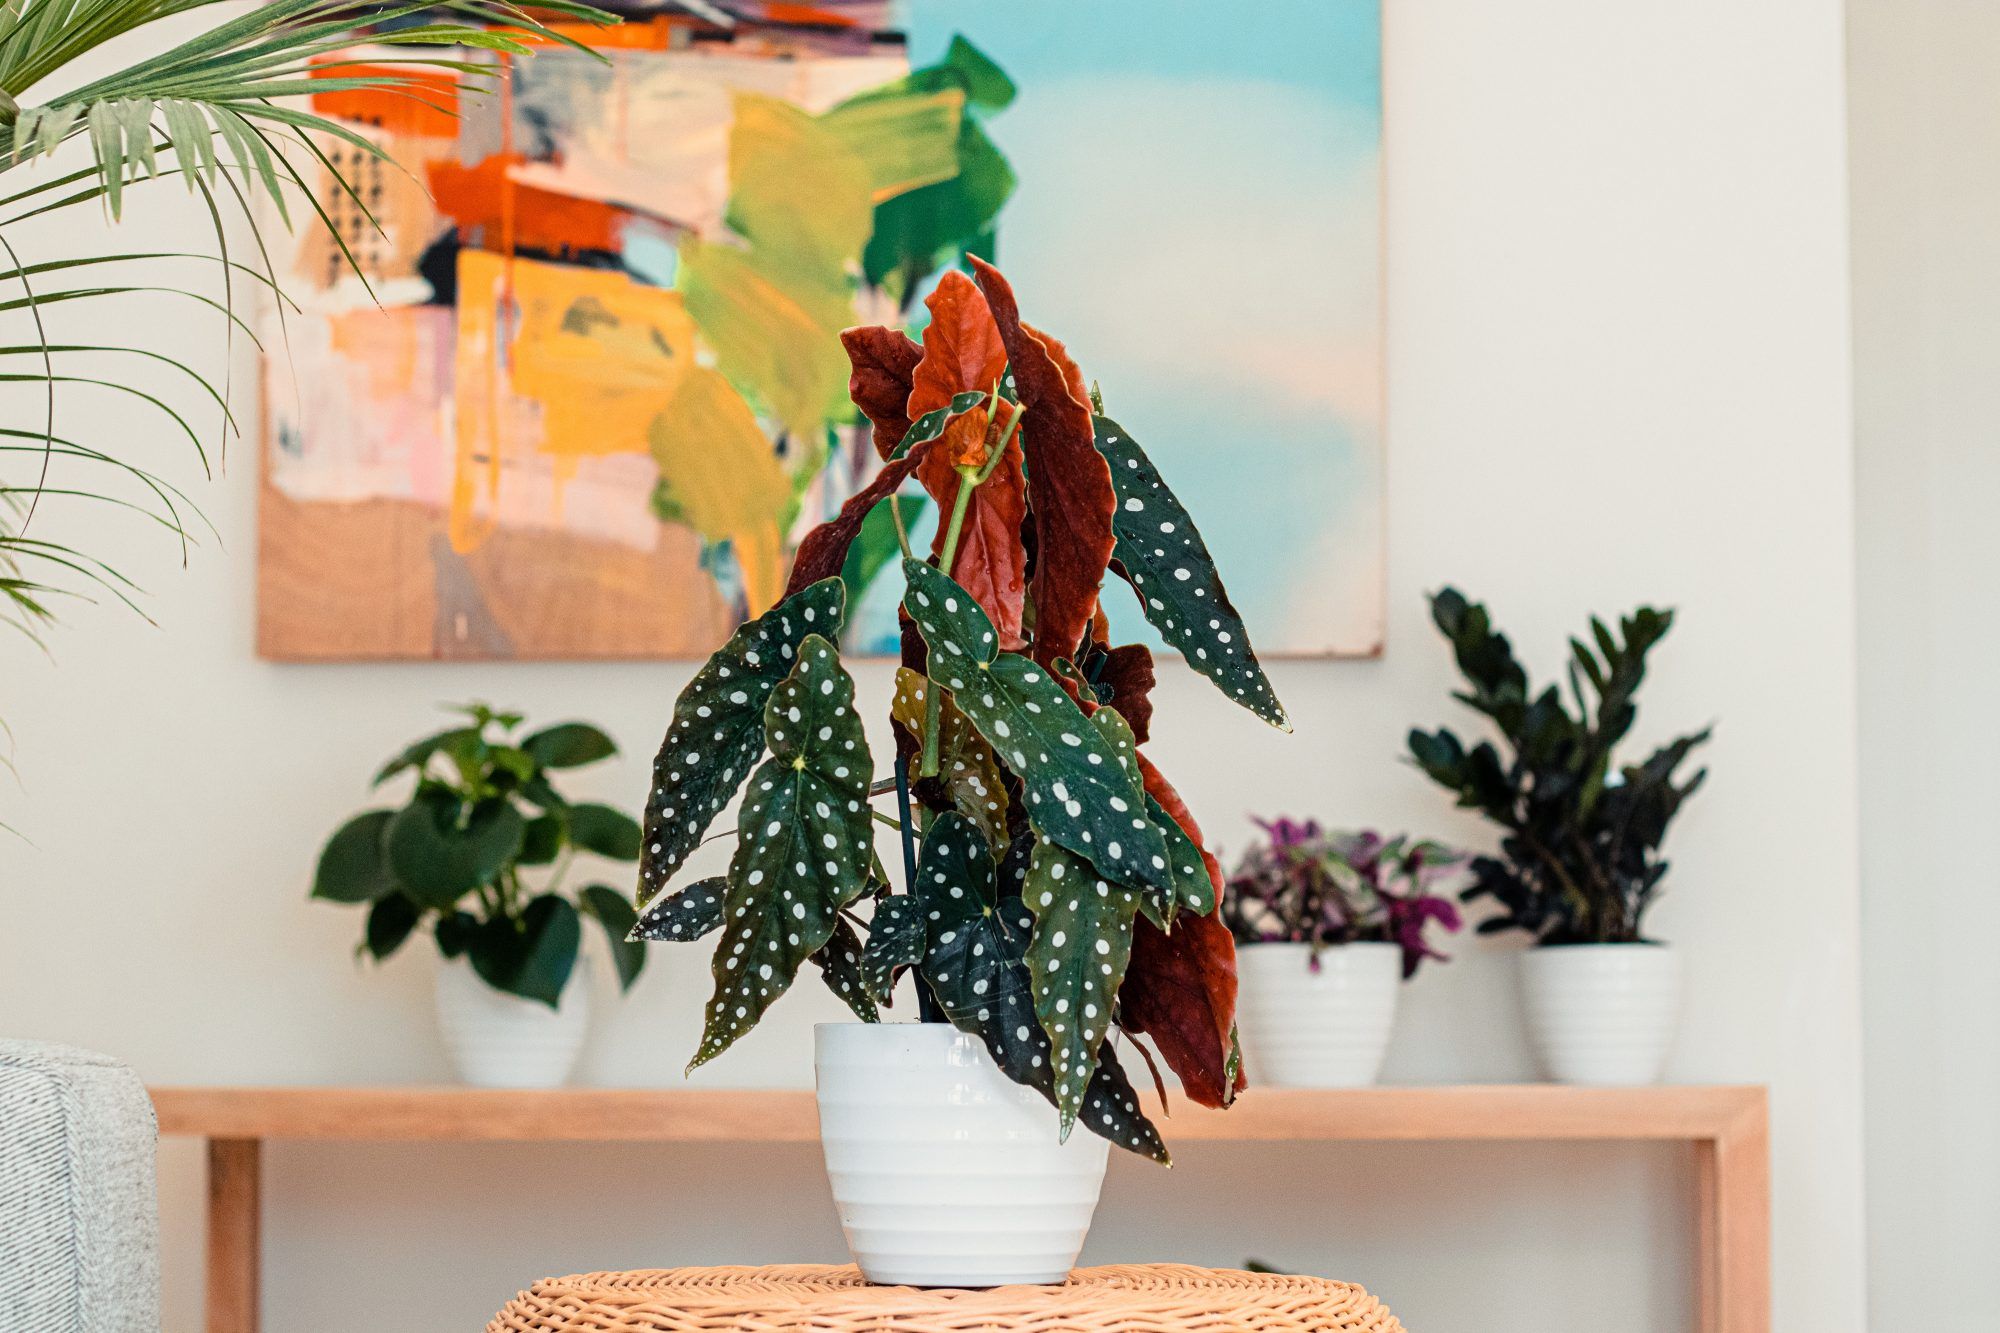 Lernen Sie die Polka Dot Begonia kennen, die pflegeleichte Zimmerpflanze, die zu niedlich aussieht, um echt zu sein